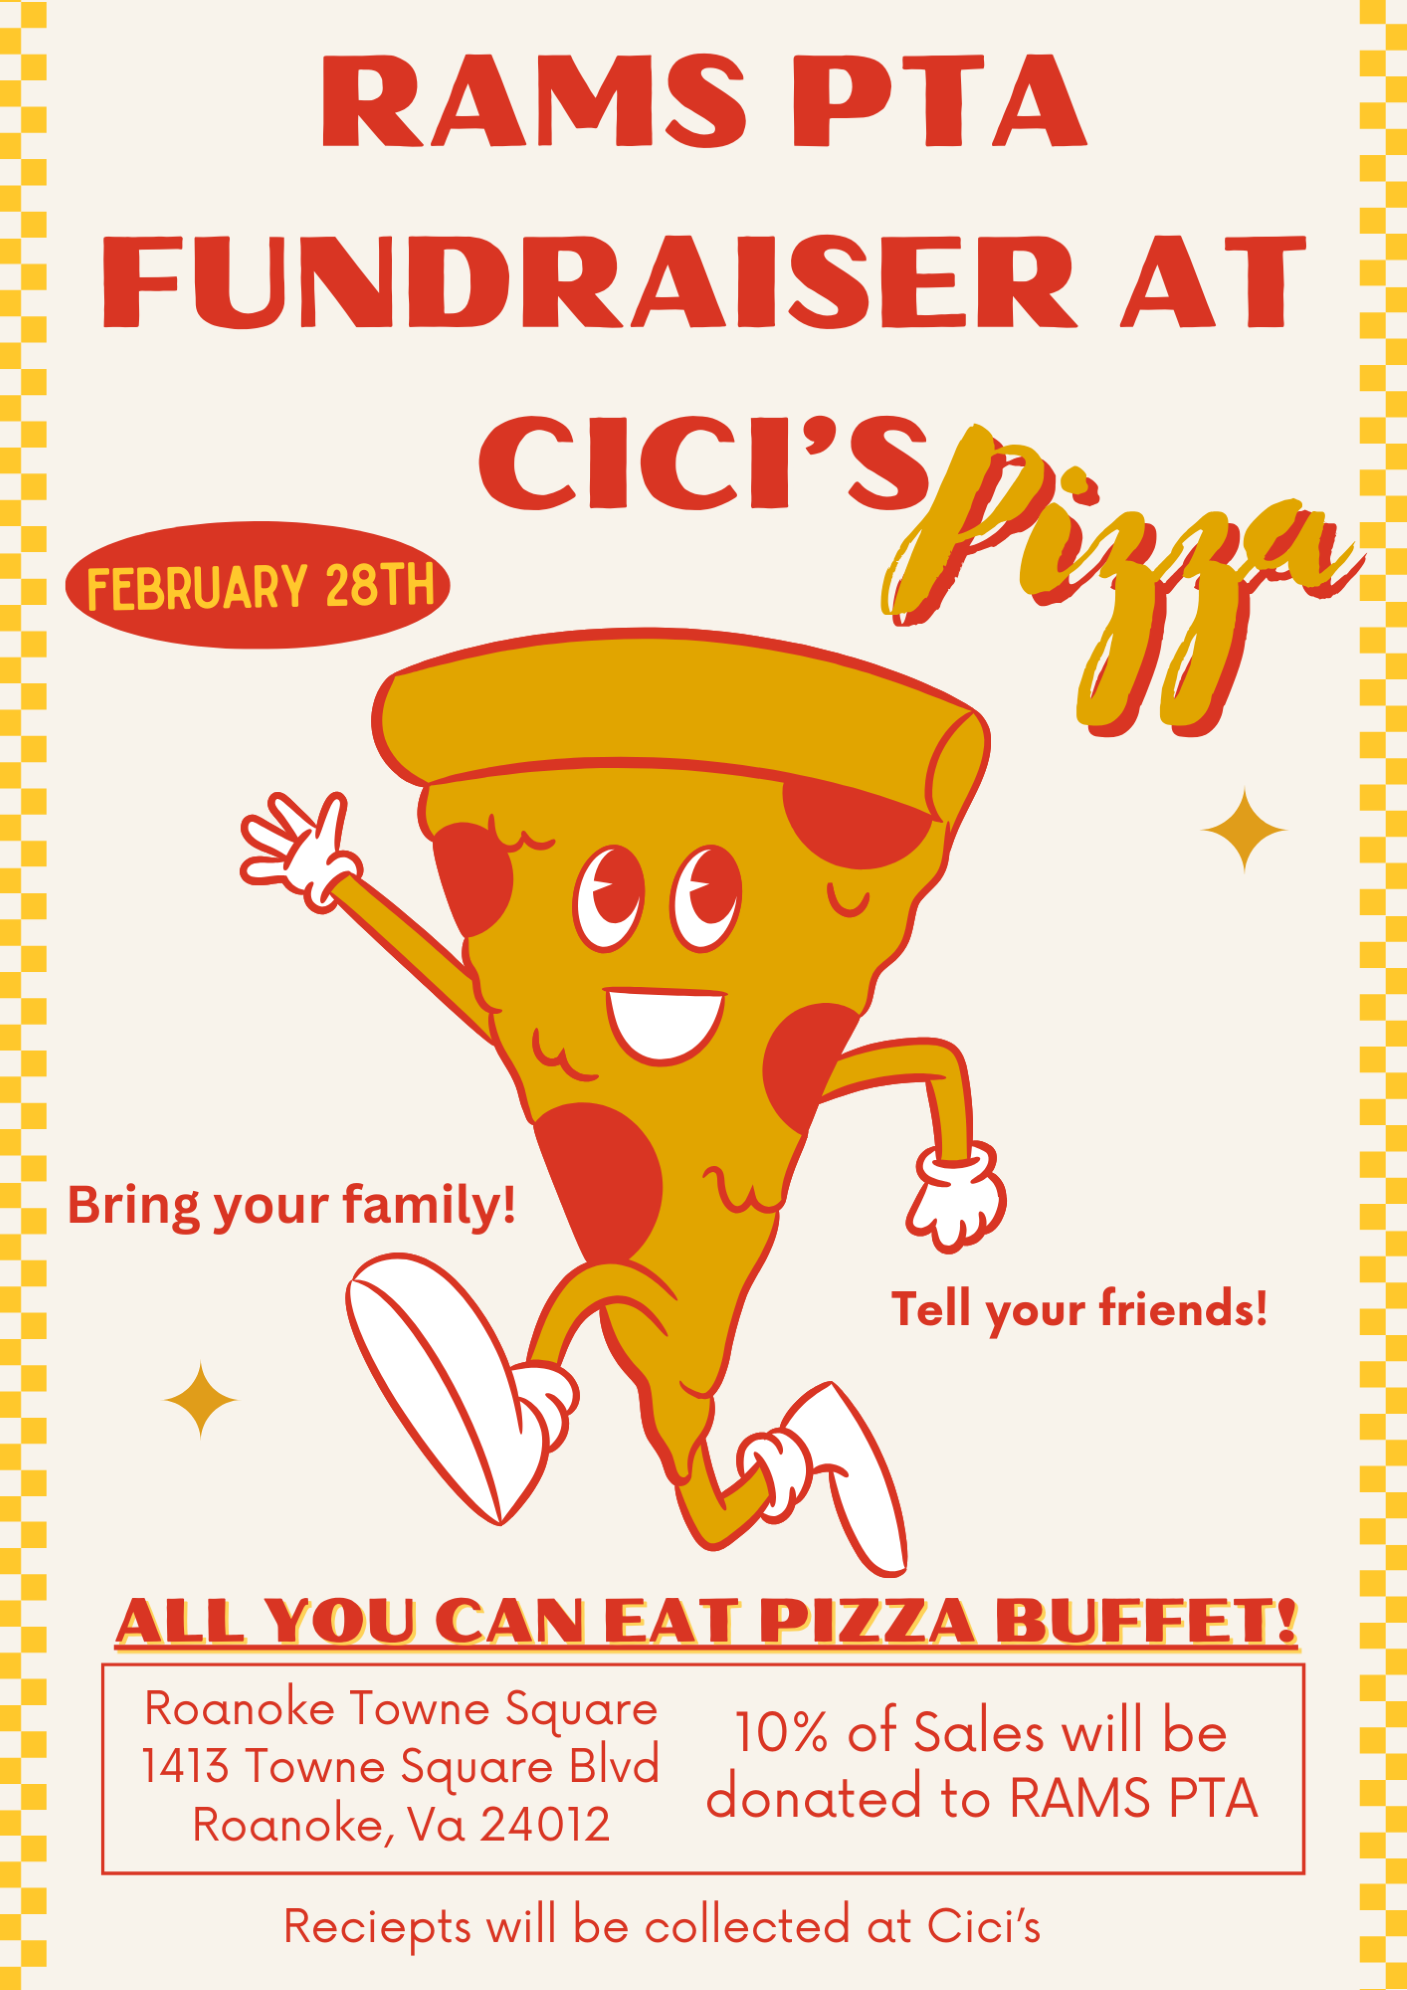  PTA Fundraiser @ CICI's Pizza